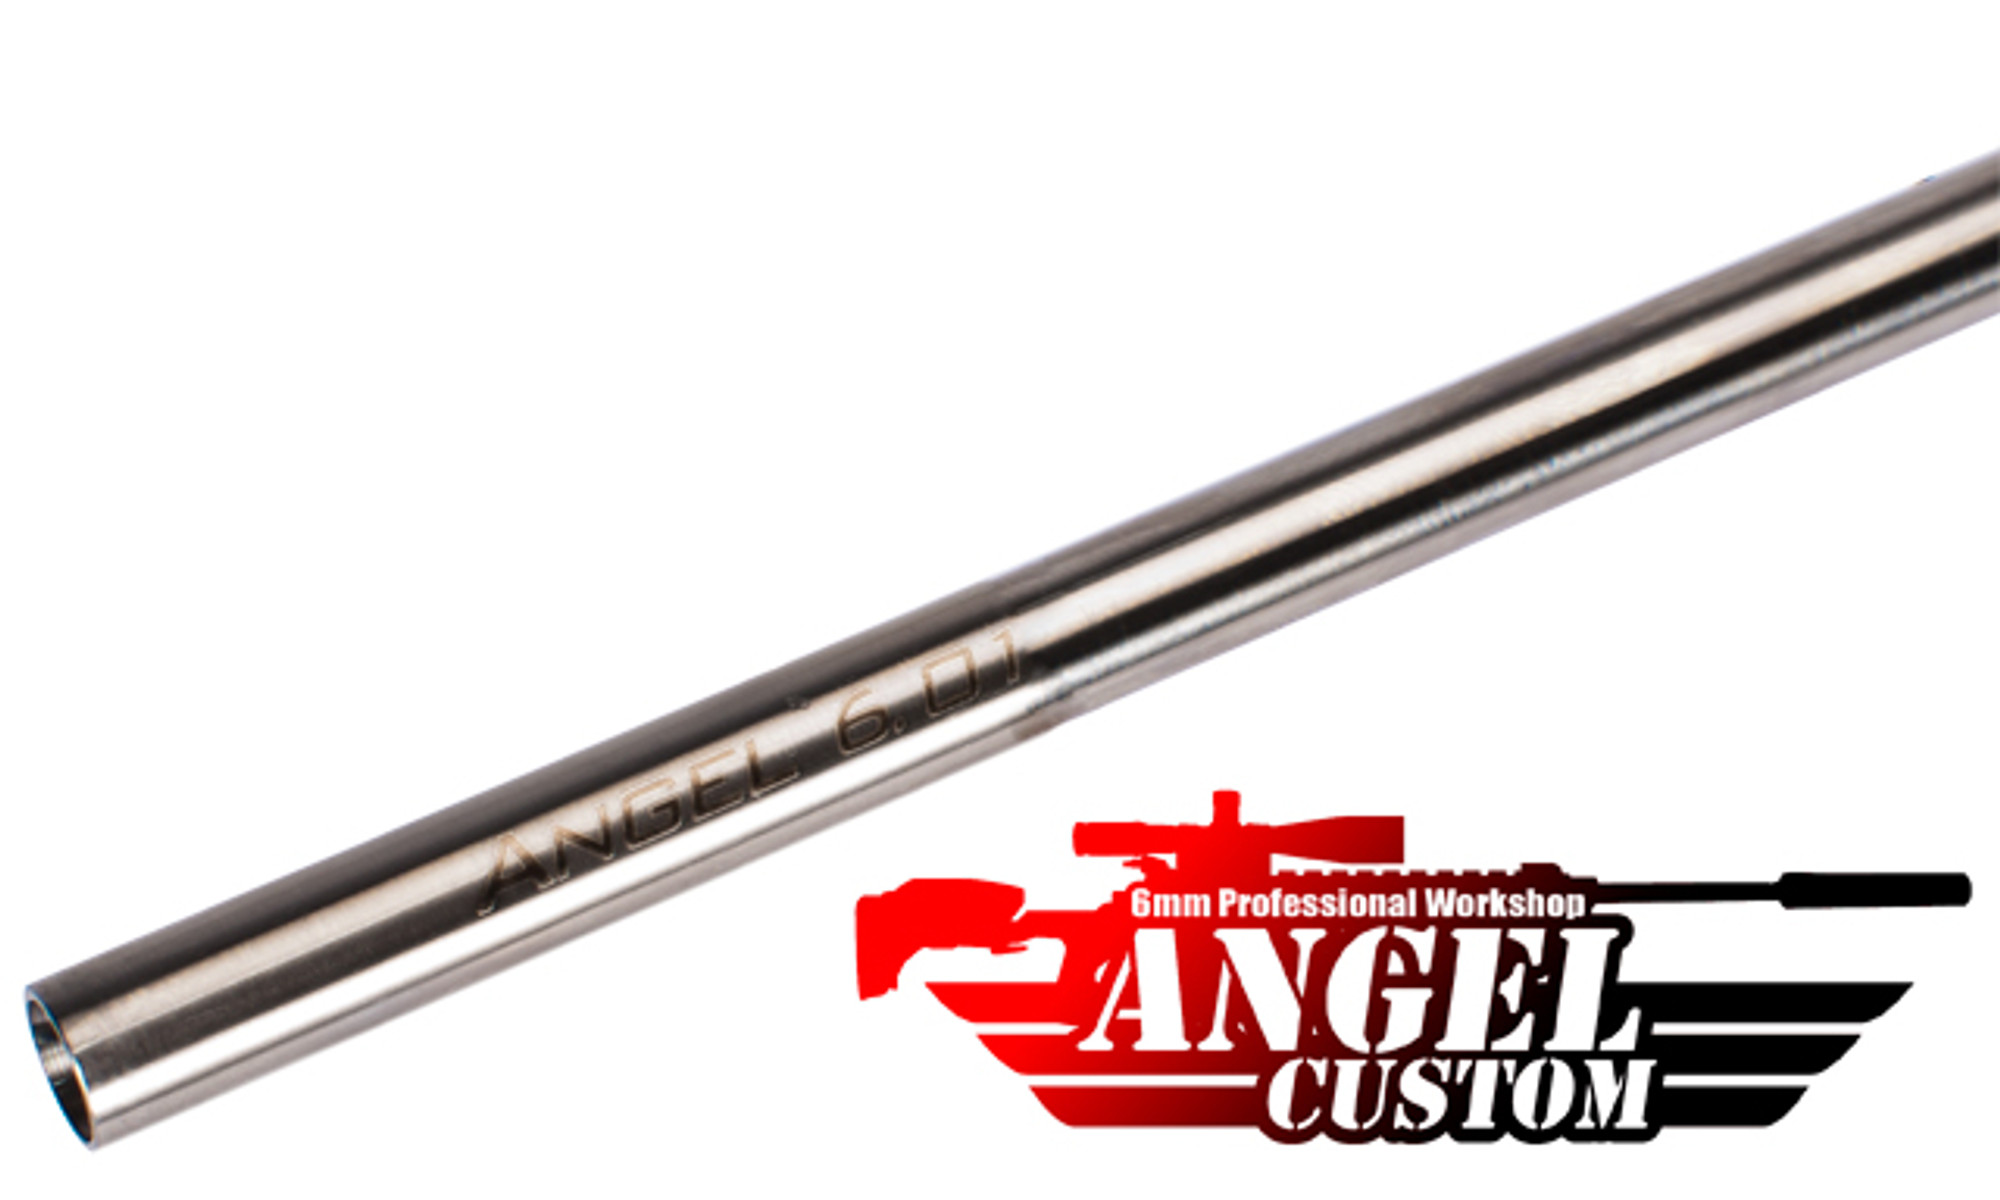 Angel Custom G2 SUS304 Stainless Steel 6.01mm GBB Tightbore Inner Barrel (113mm / WE NG3 Series)